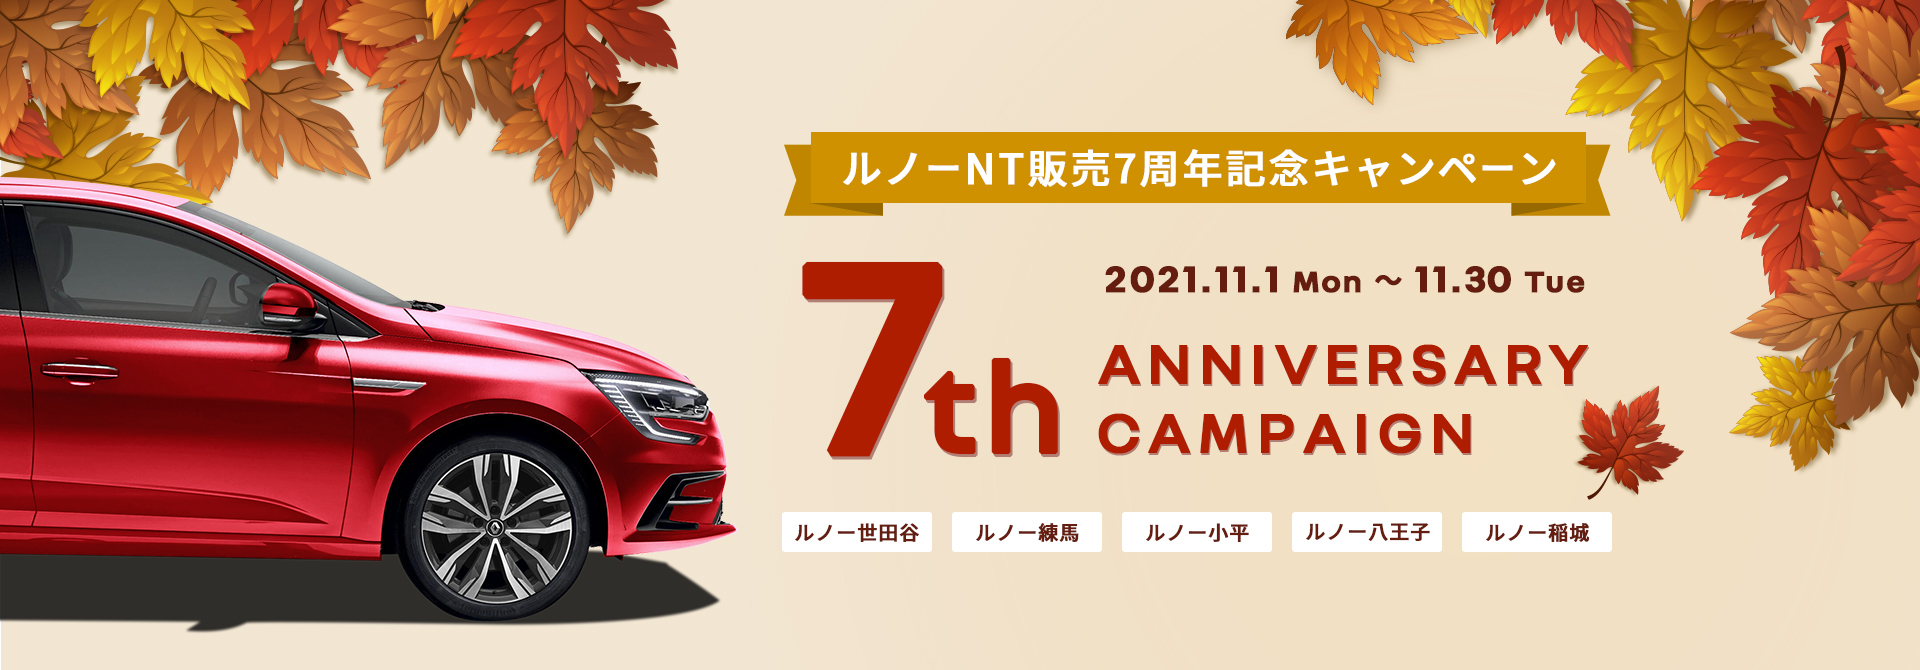 7th ANNIVERSARY CAMPAIGN ルノーNT販売7周年記念キャンペーン 2021.11.1 Mon ～ 11.30 Tue